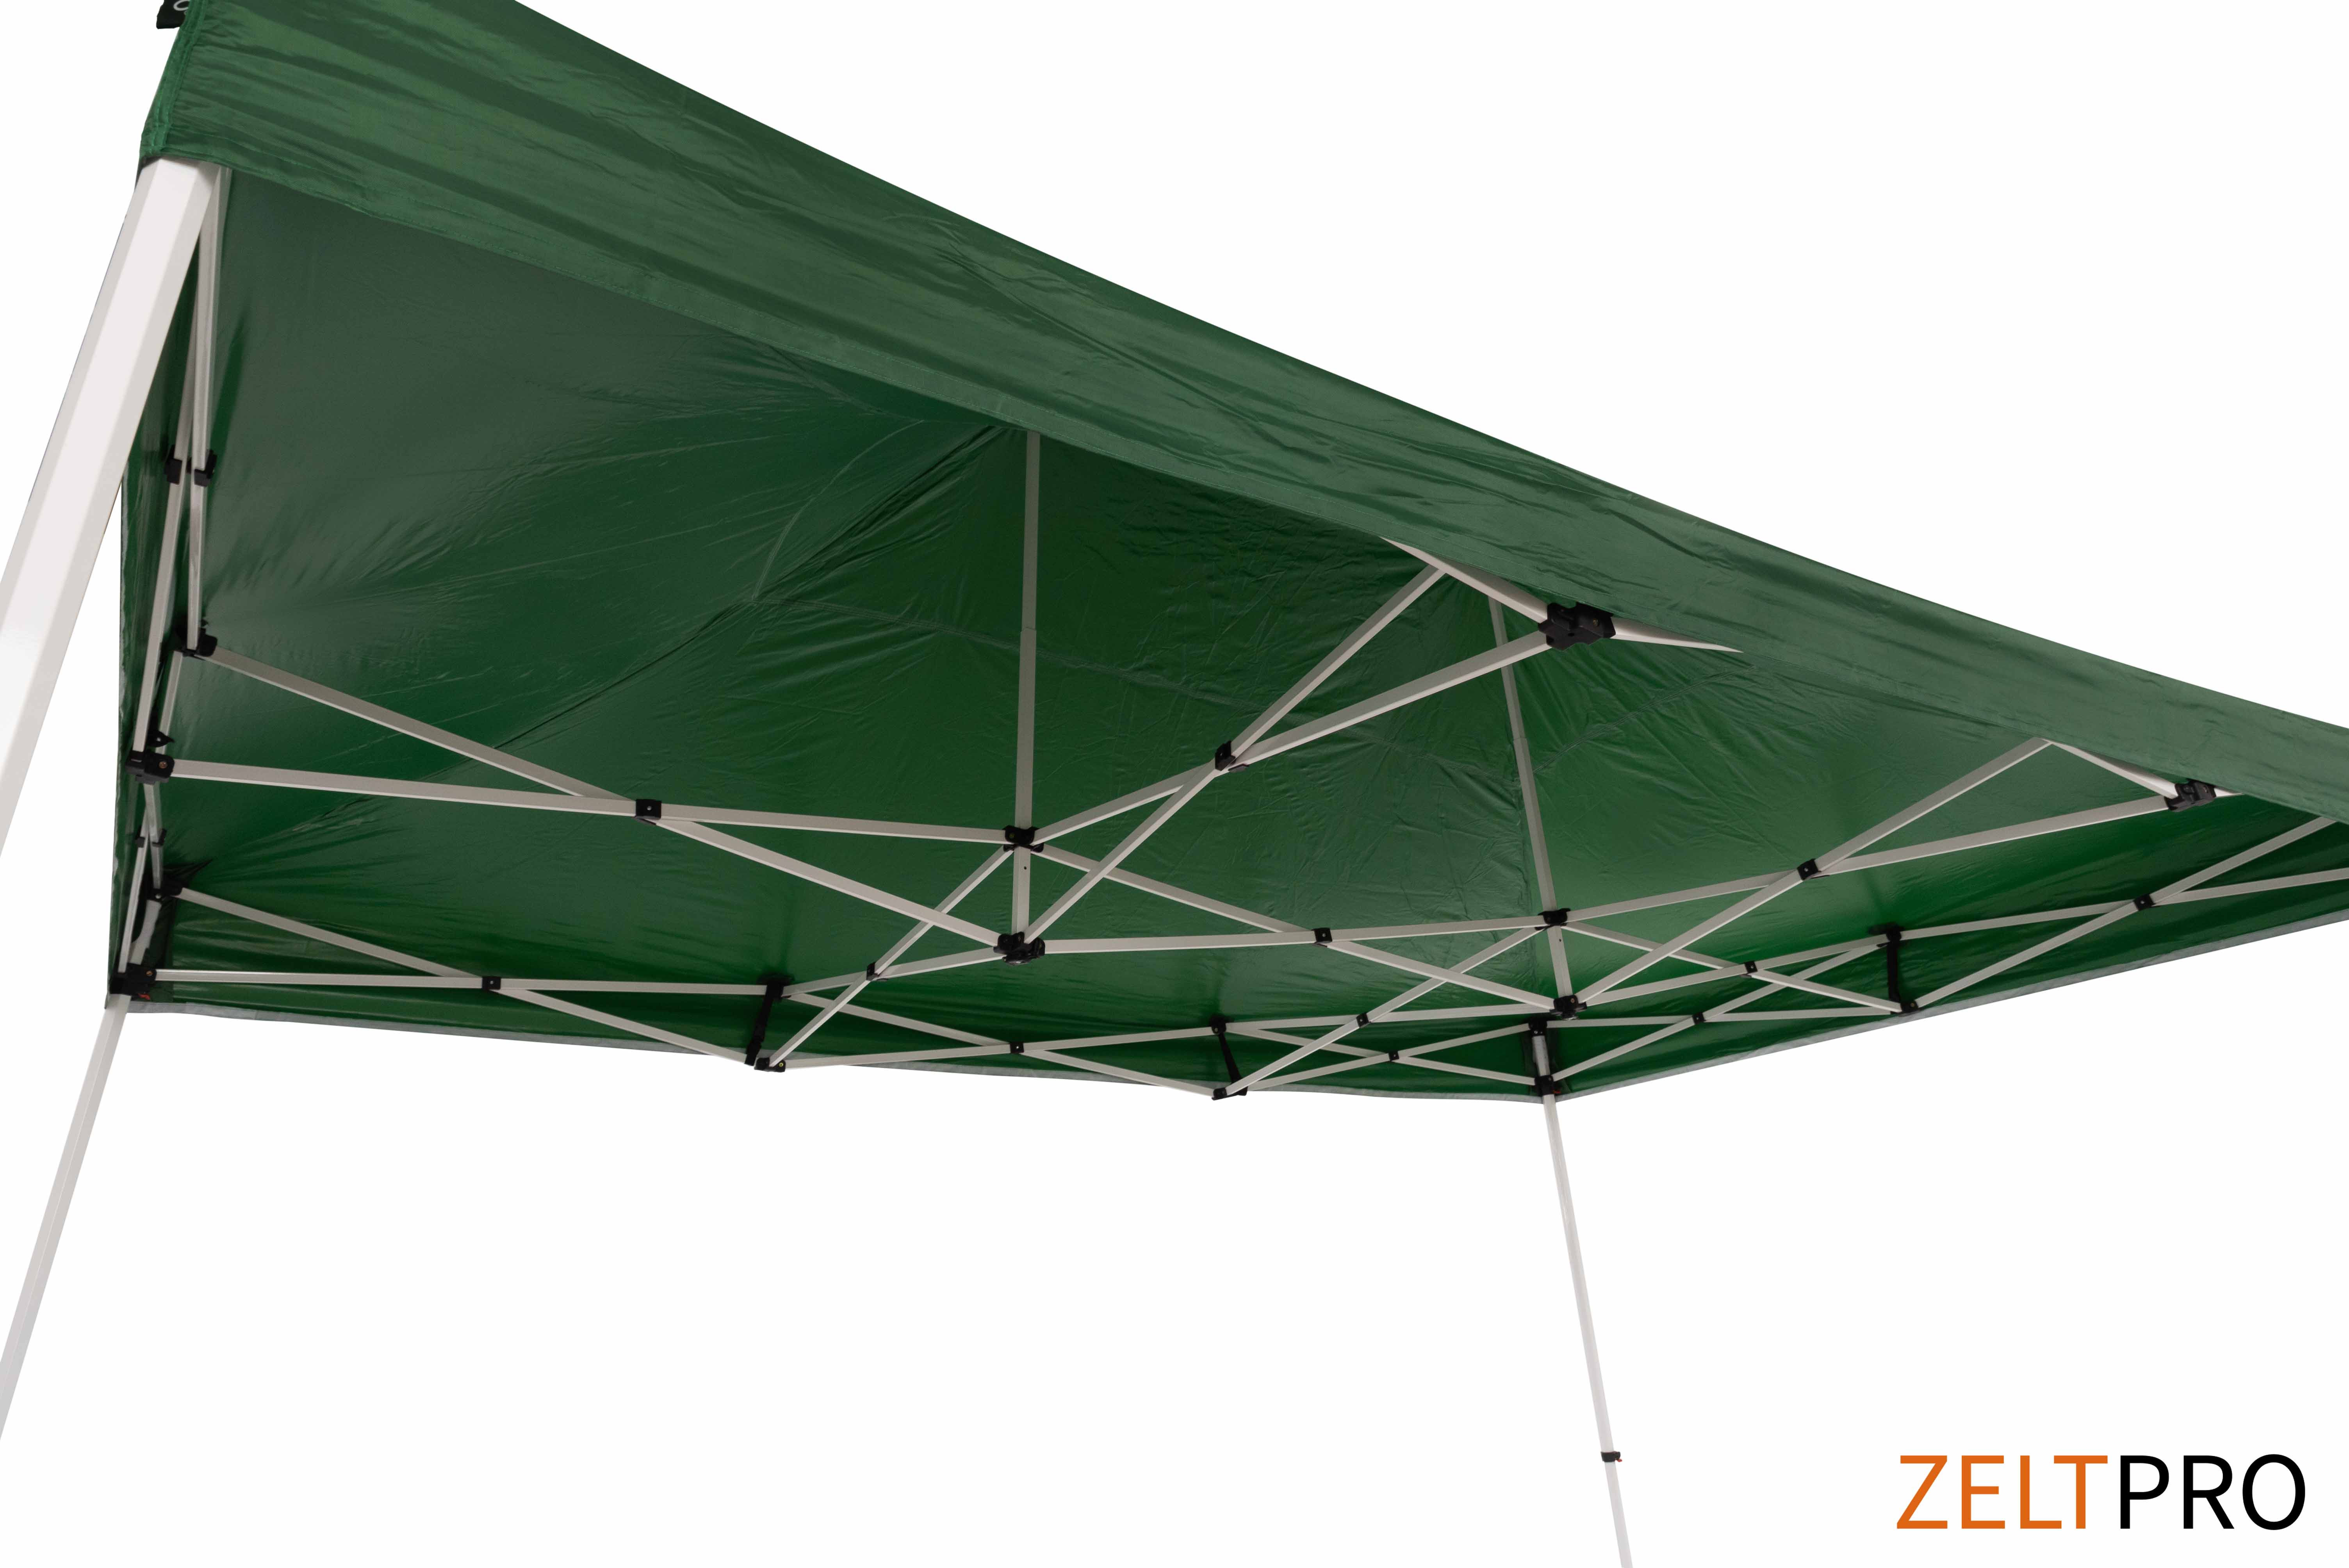 Tirdzniecības telts 3x4,5 Zaļa Zeltpro PROFRAME